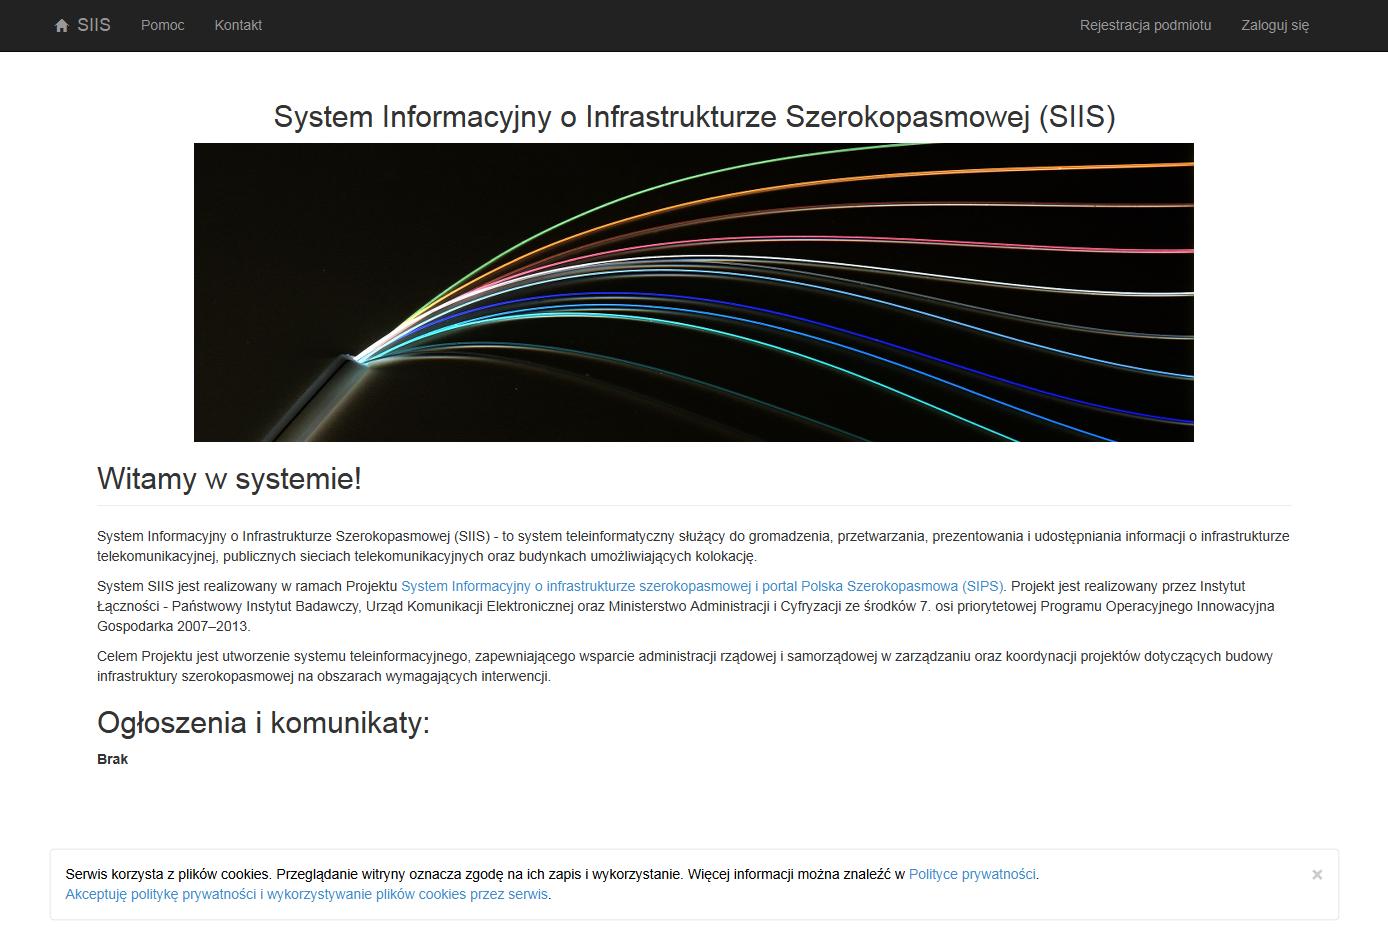 3 Rejestracja podmiotu oraz logowanie i wylogowanie z systemu Rejestracja i logowanie do systemu następuje po połączeniu z portalem SIIS na stronie: https://form.teleinfrastruktura.gov.pl Rys. 1.